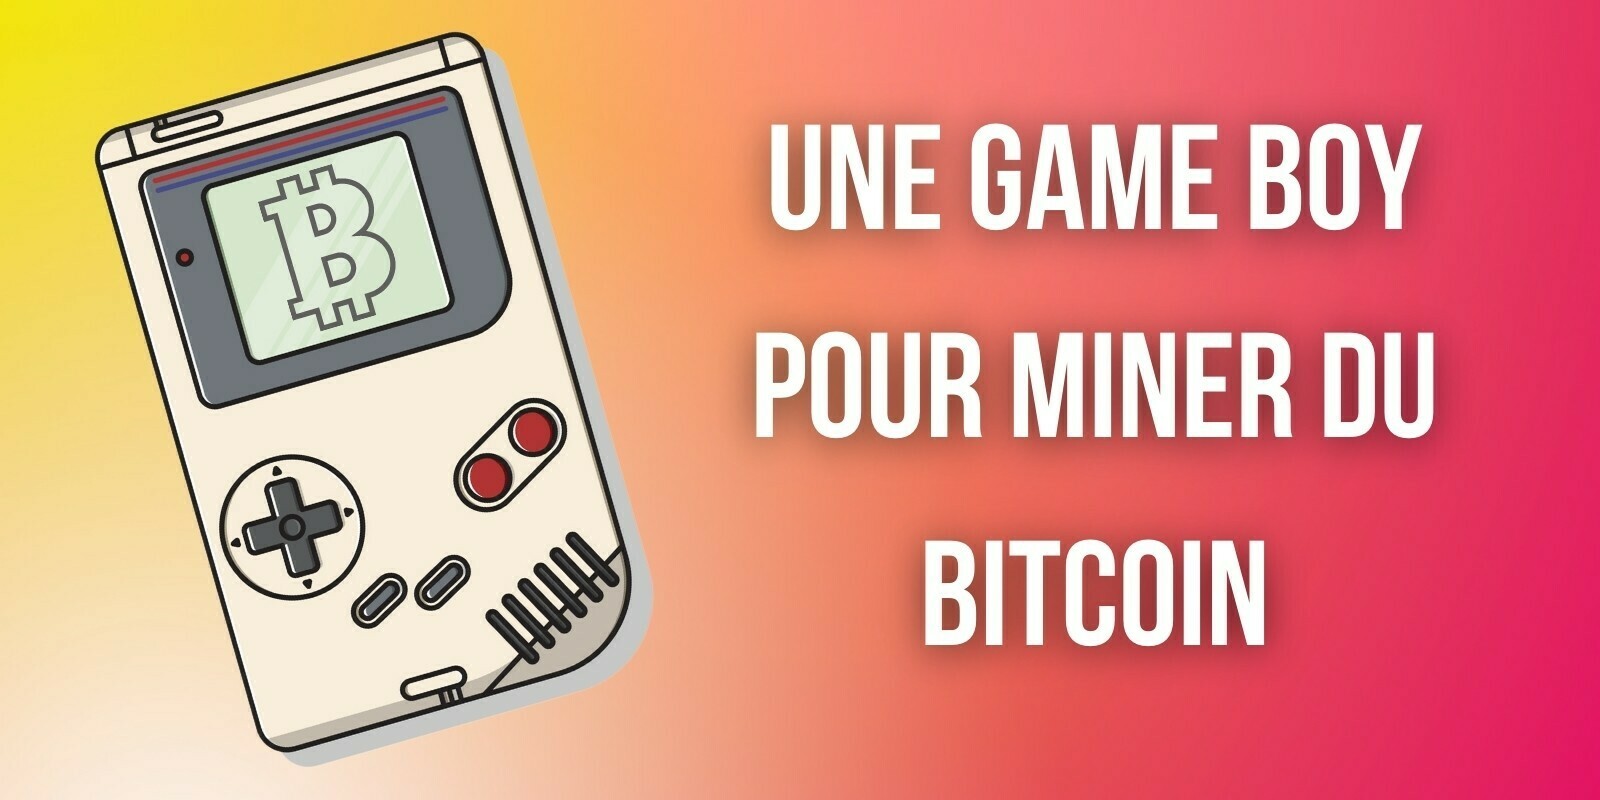 Miner du bitcoin (BTC) avec une Game Boy de Nintendo, c'est possible